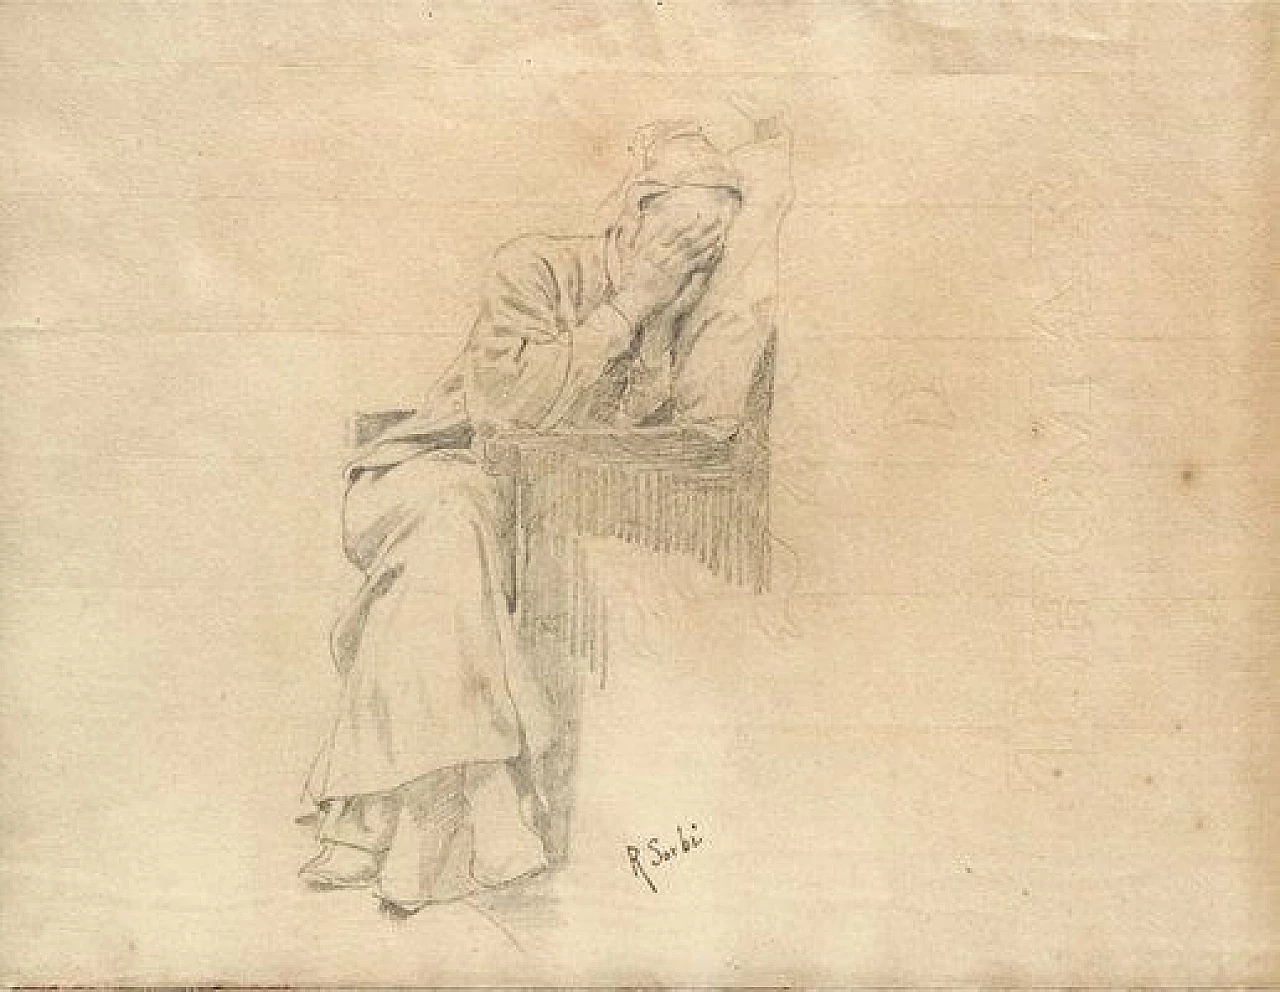 Raffaello Sorbi, Dante's rest, pencil drawing on paper, 19th century 1